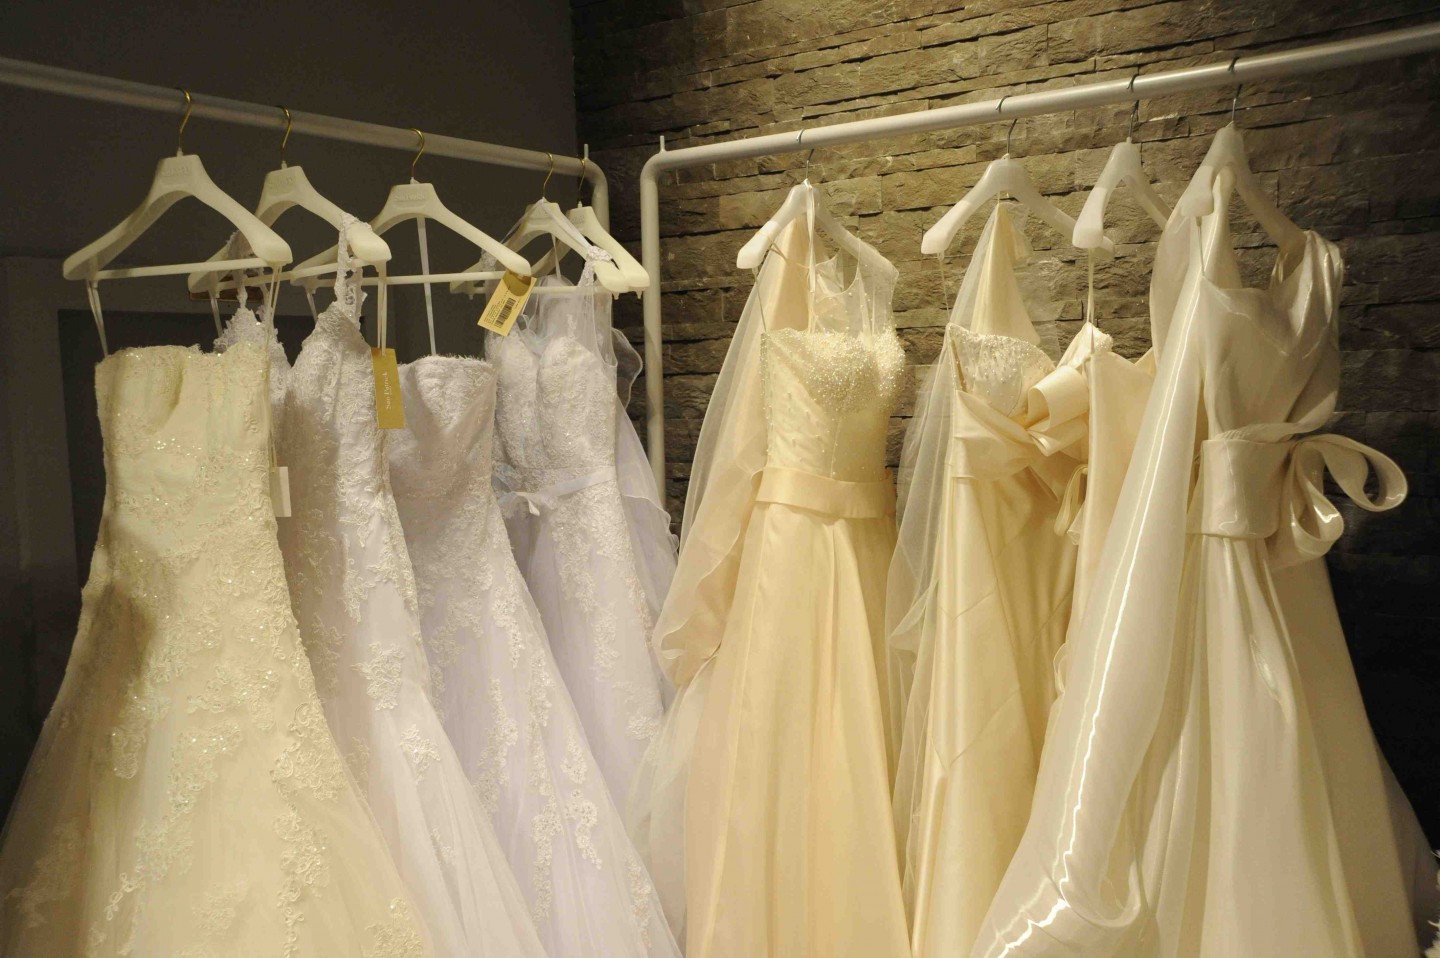 Viva al Sposa é il negozio di abiti da sposa a Siena di Ilaria e Camilla. Offre noleggio e wedding coach, la consulenza per la sposa a 360°